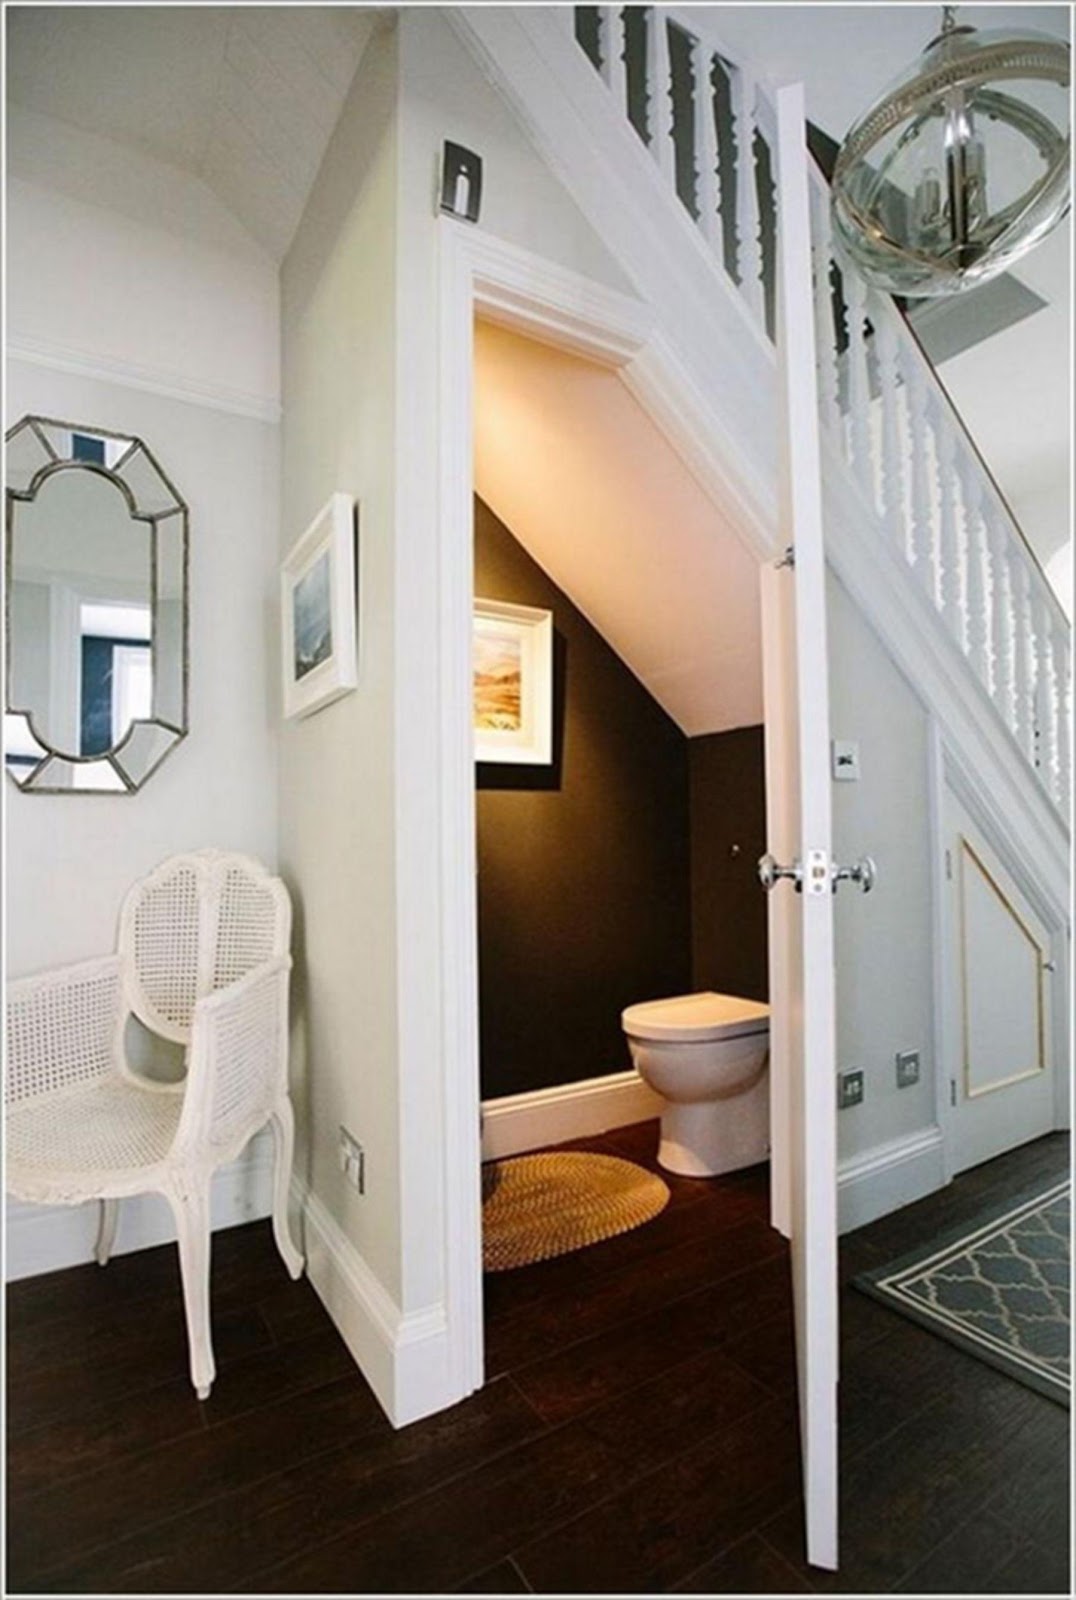 Trang trí phía ngoài nhà vệ sinh dưới gầm cầu thang bằng cách thiết kế thêm gương, tranh treo tường, kệ, giá cây… 